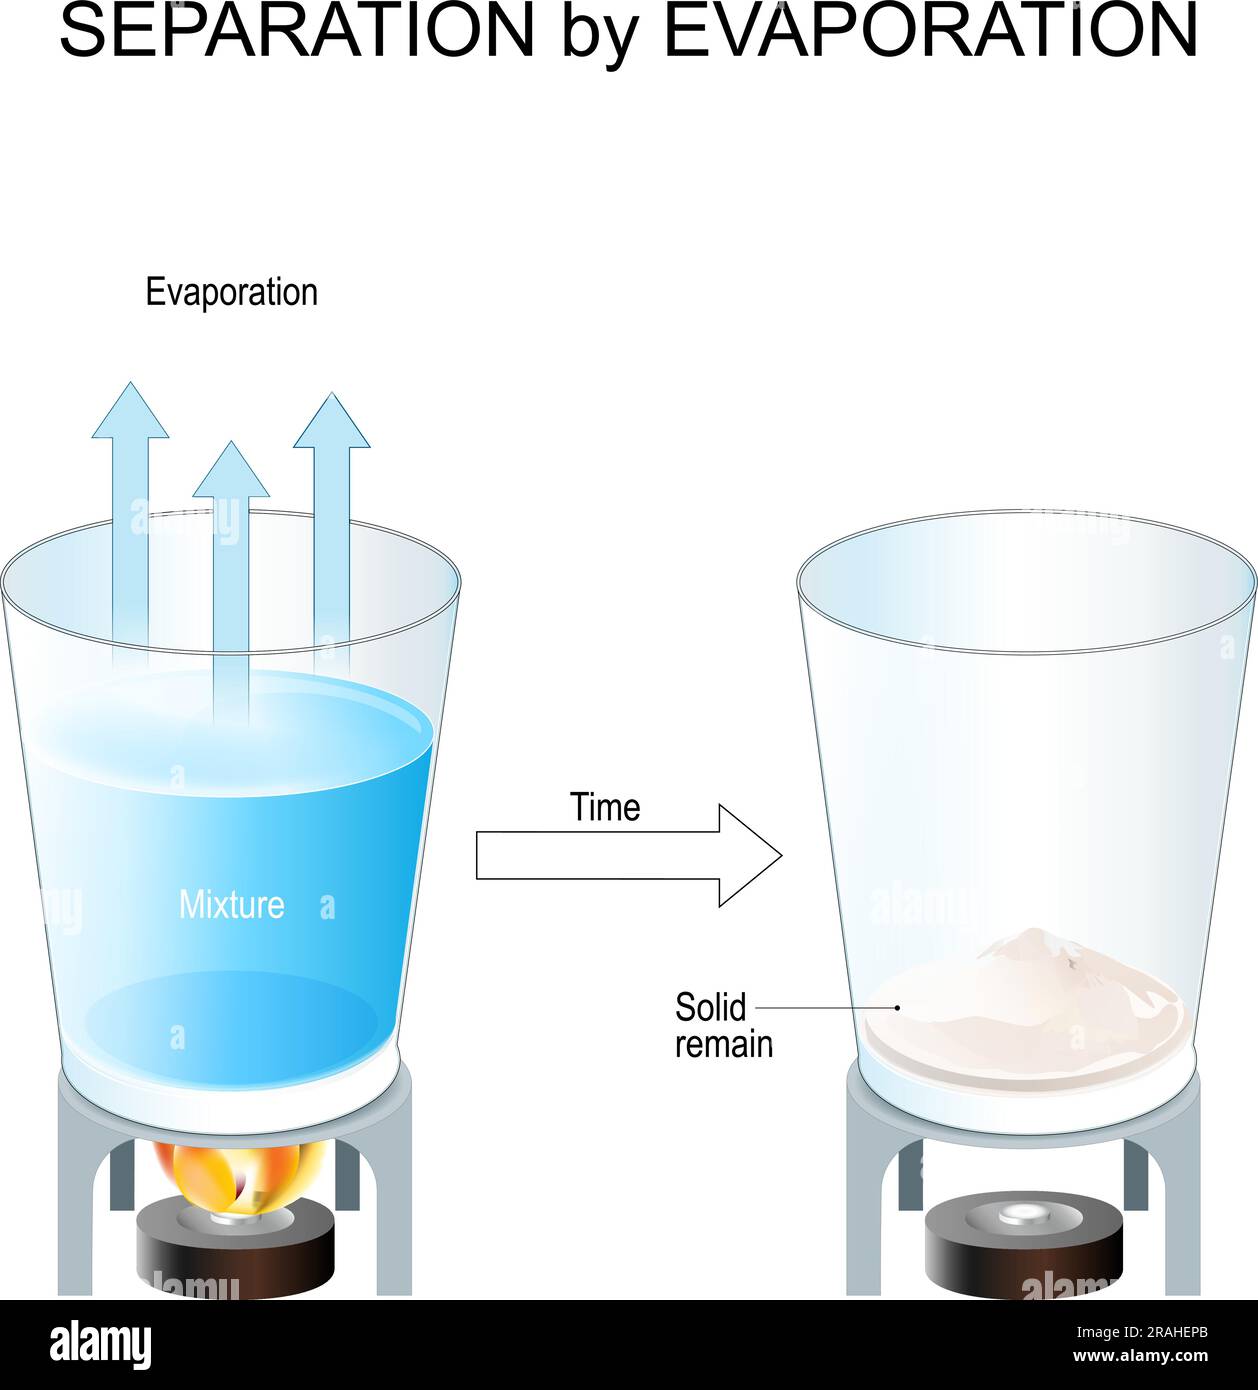 Abscheidung durch Verdampfung. Verfahren zur Trennung von Bestandteilen eines fest-flüssigen Gemisches. Organische Chemie. Salzextraktion. Wissenschaftliches Experiment Stock Vektor